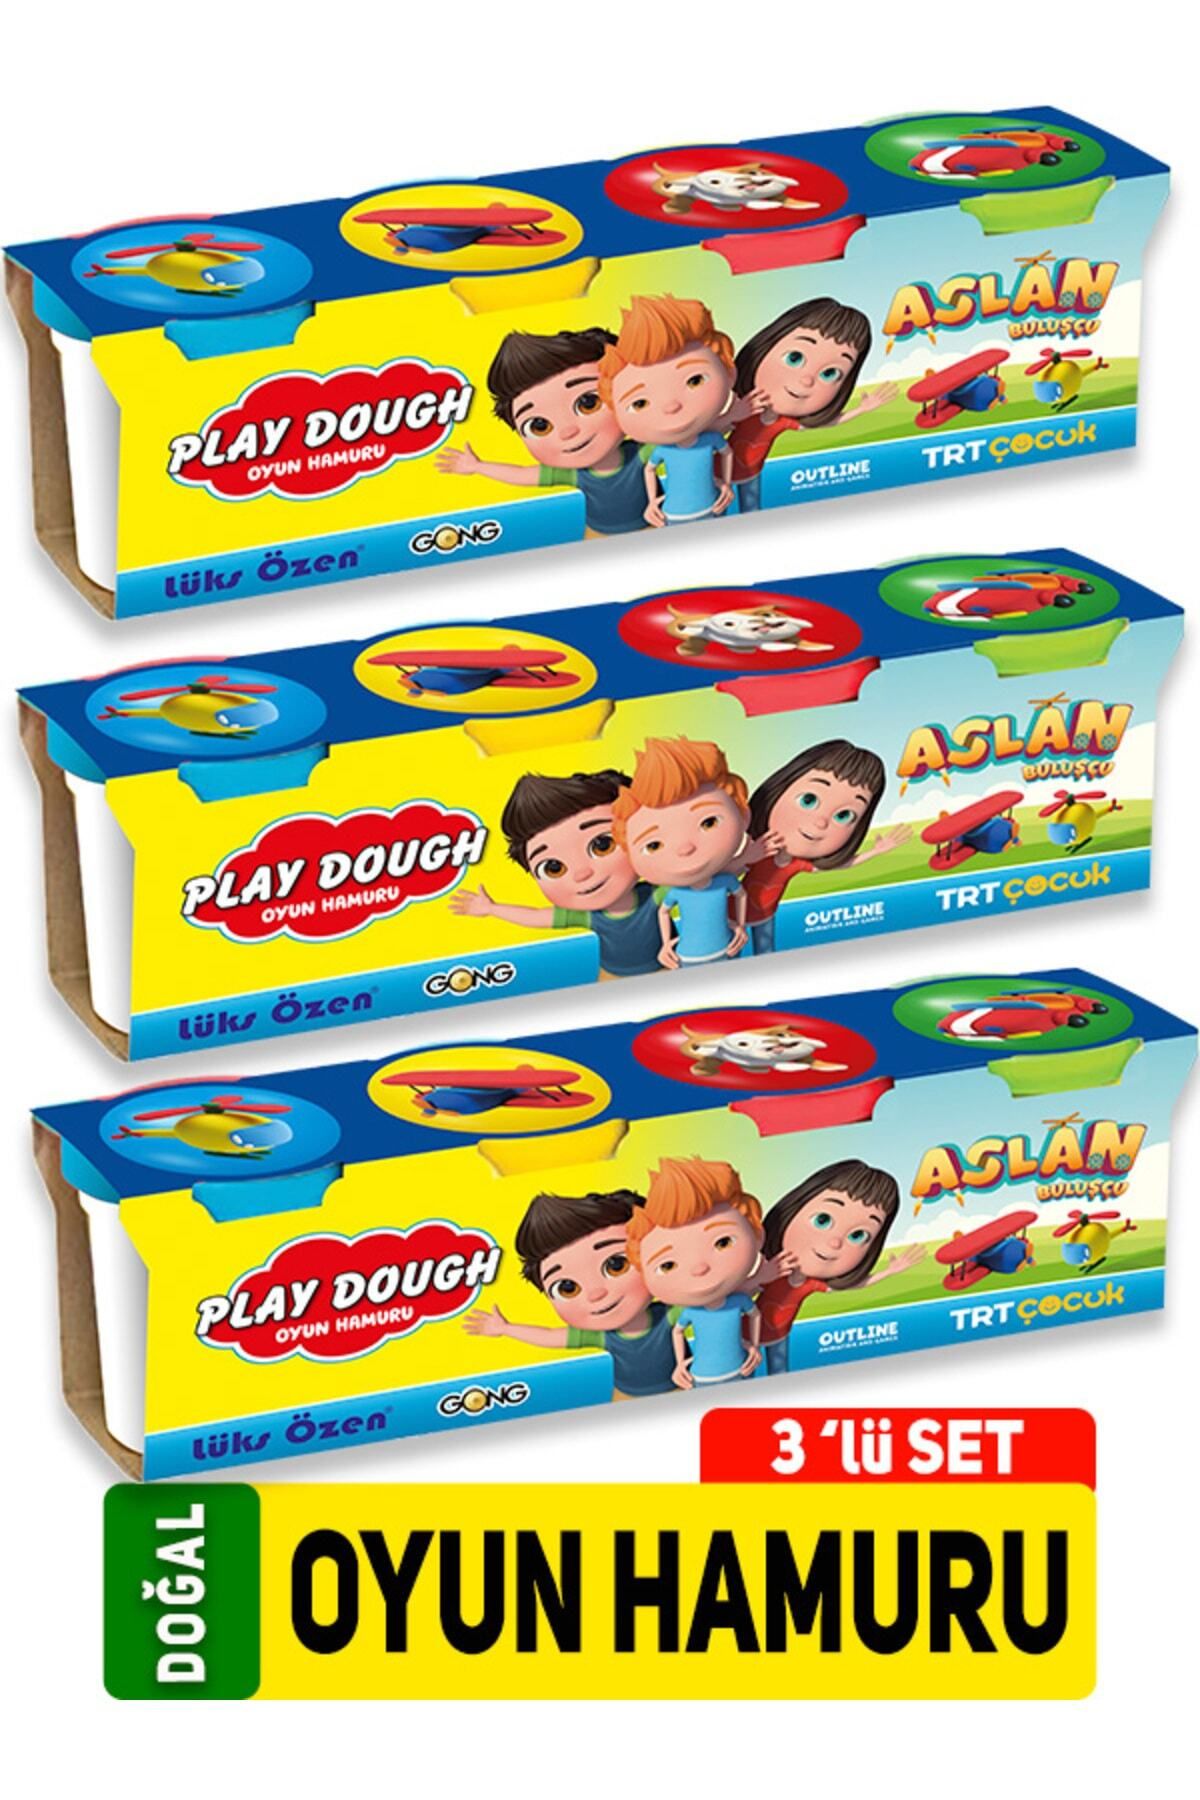 GONG YAYINCILIK Play Dough Doğal Oyun Hamuru 4 Renk 3'lü Set 1344 Gr